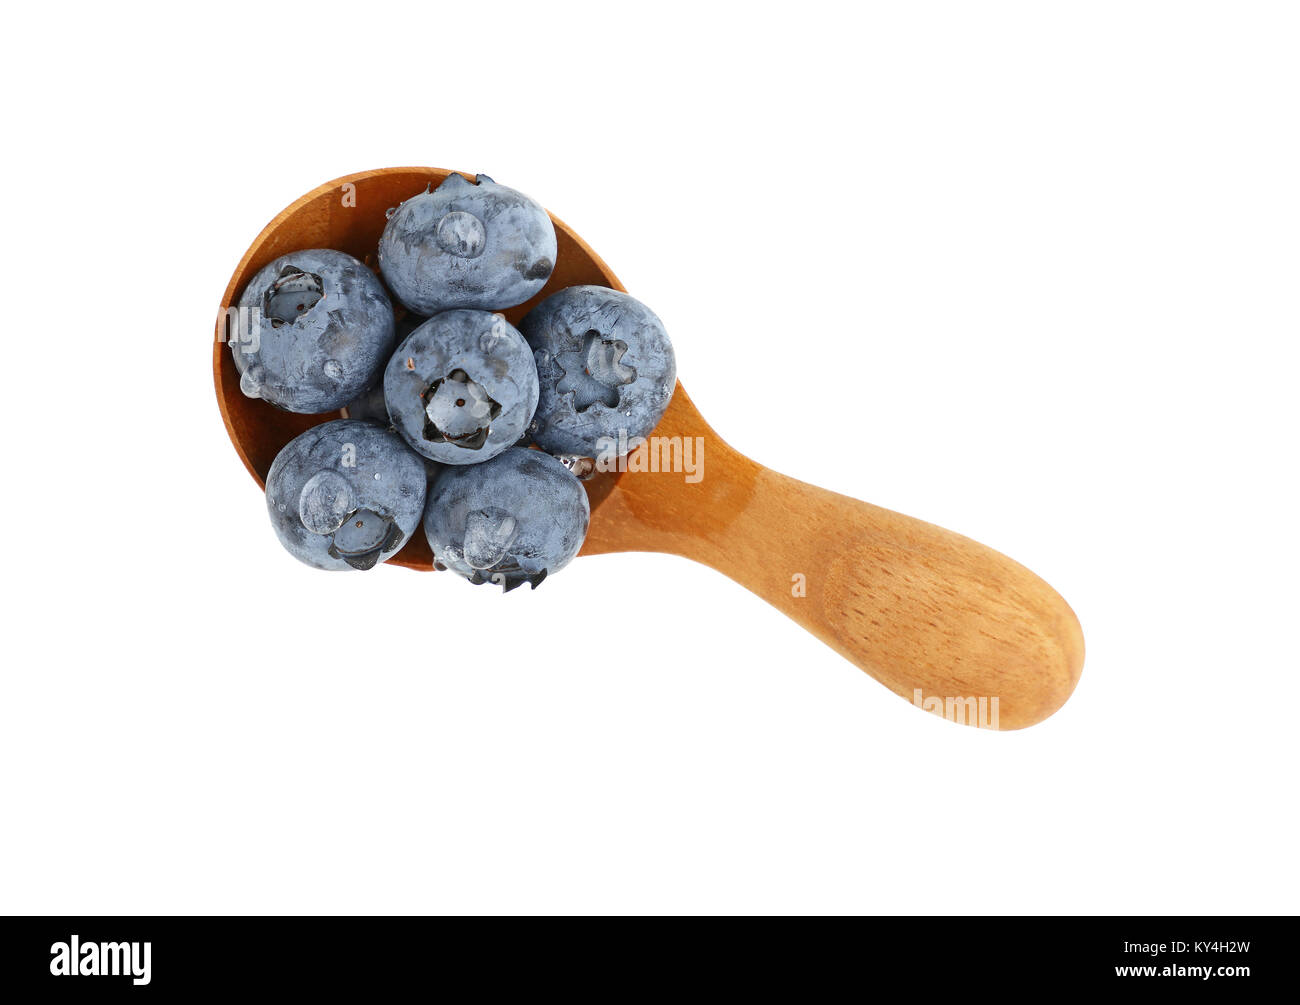 Schließen sich mehrere frisch gewaschen blueberry Beeren mit Wassertropfen in einem rustikalen natürlichen hölzernen Schaufeln Löffel auf weißem Hintergrund, erhöhte nach oben v Stockfoto